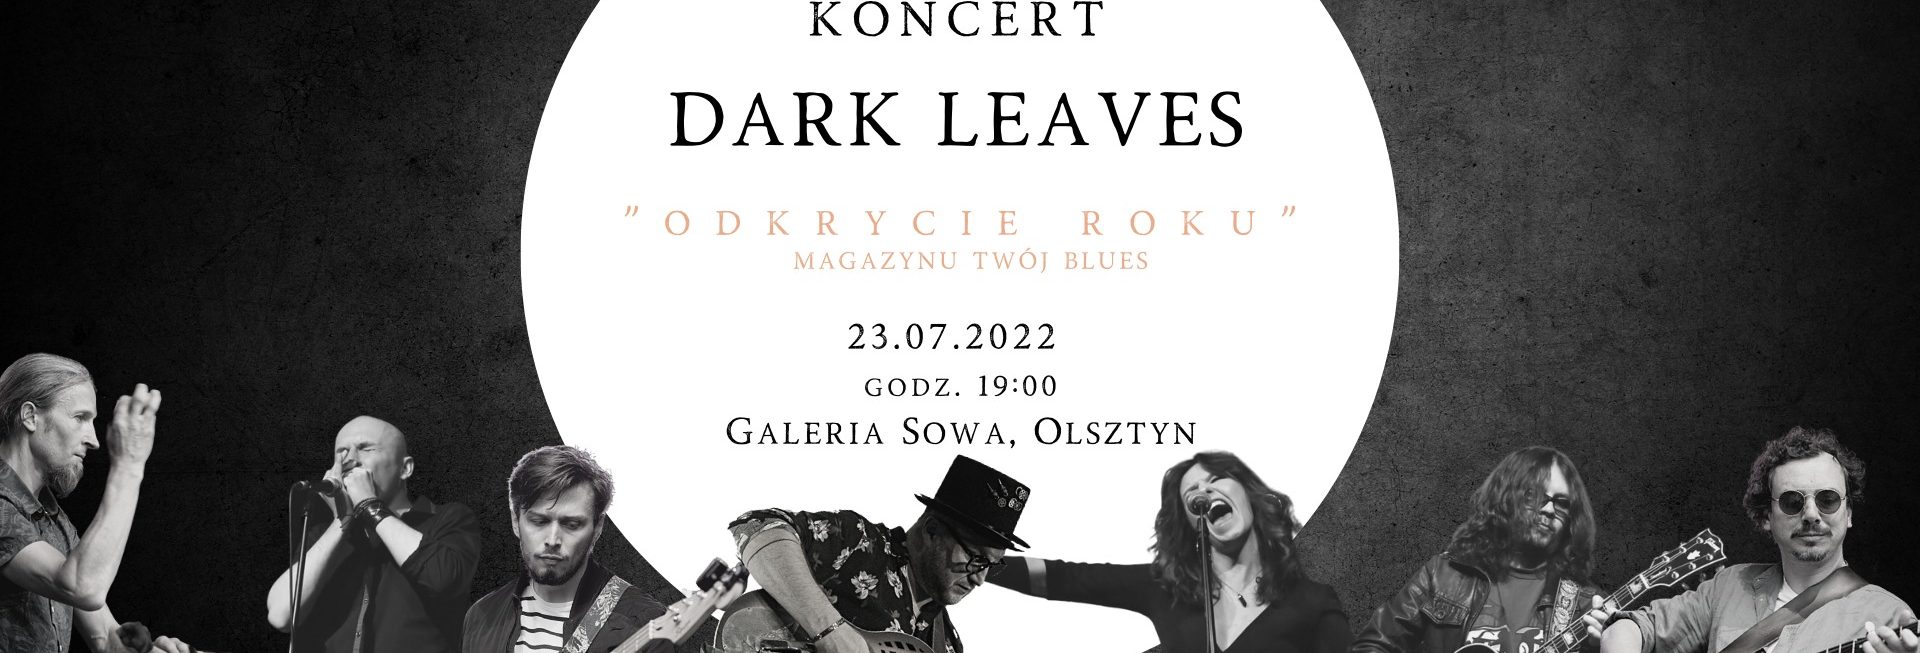 Plakat zapraszający w sobotę 23 lipca 2022 r. do Olsztyna na koncert zespołu Dark Leaves Olsztyn 2022.